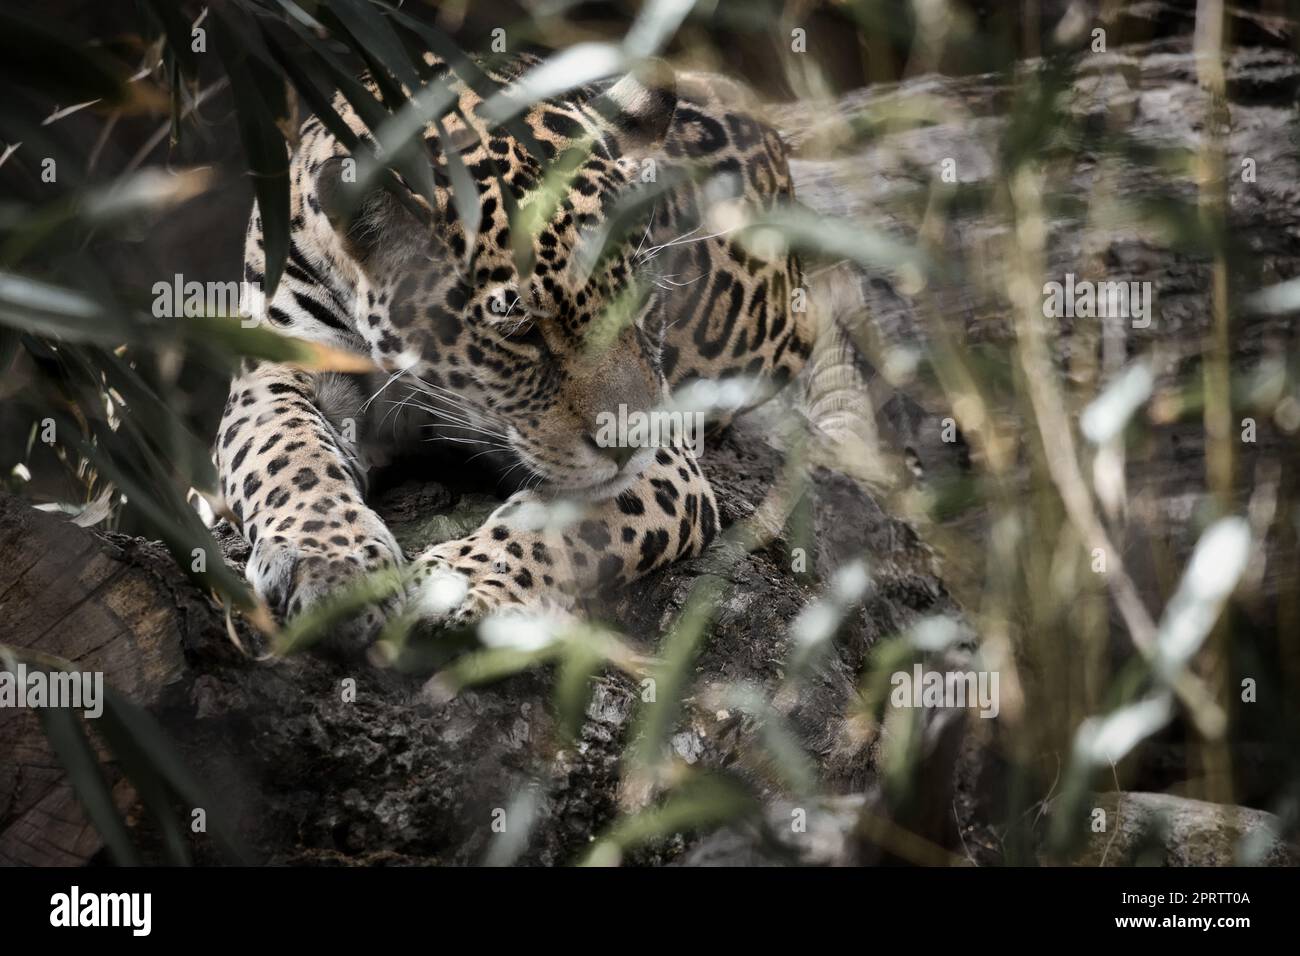 Jaguar giace dietro l'erba. pelliccia maculata, in agguato mimetico. Il grande gatto è un predatore. Foto Stock